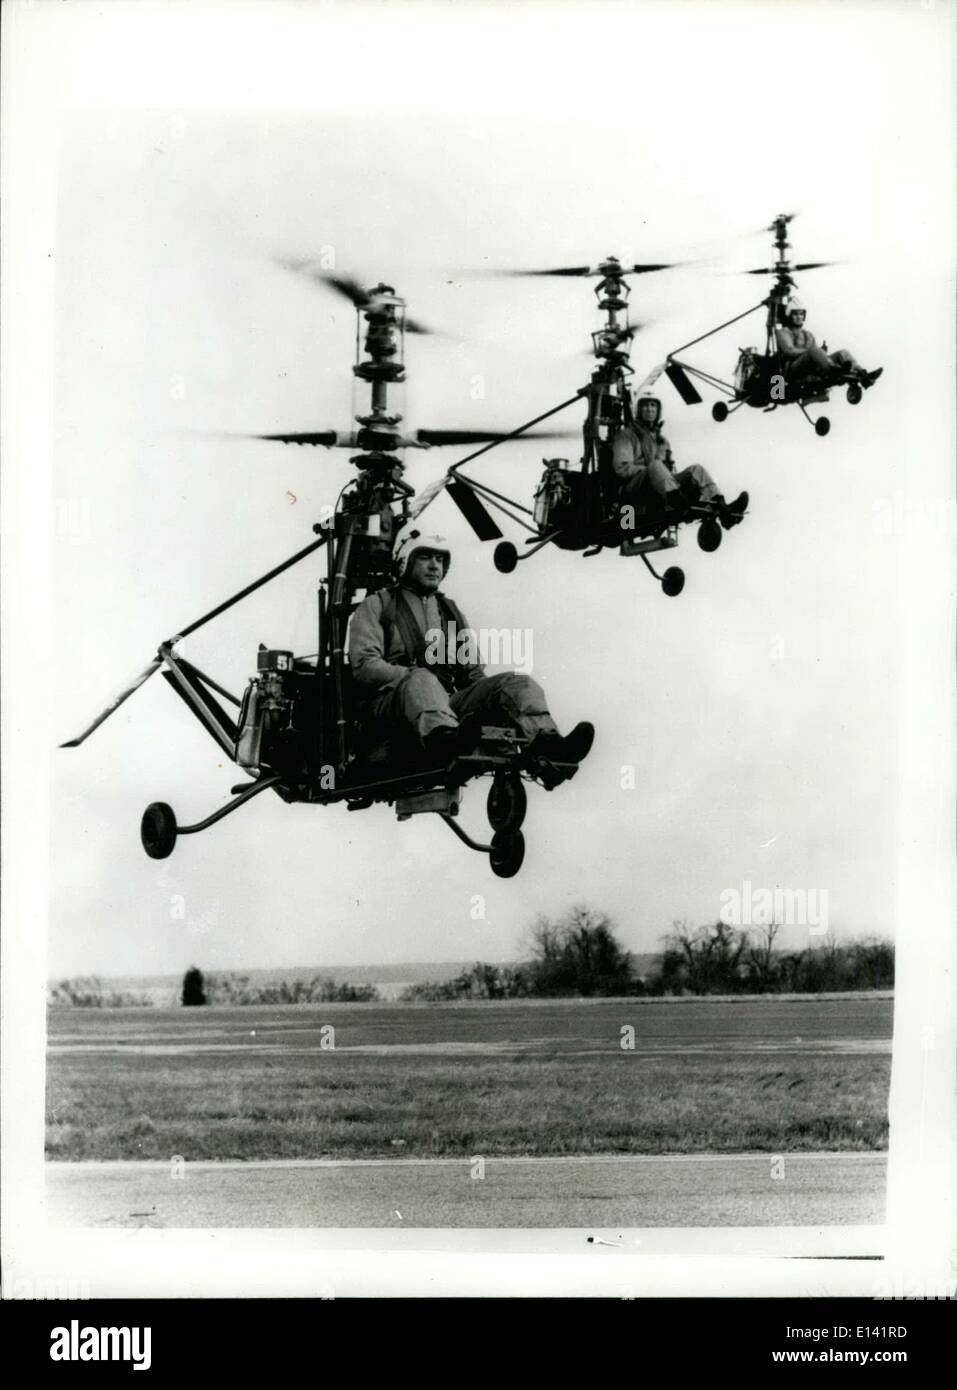 31 mars 2012 - ''Flying Leathernecks'' en test. Un homme ''Rotorcycles''. Trois hélicoptères Marine Corps un homme connu comme ''Flying Leathernecks'' preuve de leur stabilité et de capacités de vol stationnaire au cours de l'aéronef eveluations tactique à l'École du Corps des Marines, Quantico, en Virginie. Appelé YRON-1, le nouveau ''Rotorcycle'' est en cours de test pour lutter contre l'utilisation dans la mesure du possible , de reconnaissance, d'observation et de messagerie de missions d'appui logistique limitée. La machine pèse environ 440 livres vide est capable de transporter une charge utile de 250 livres, et a une vitesse d'environ 70 à 13 mph Banque D'Images